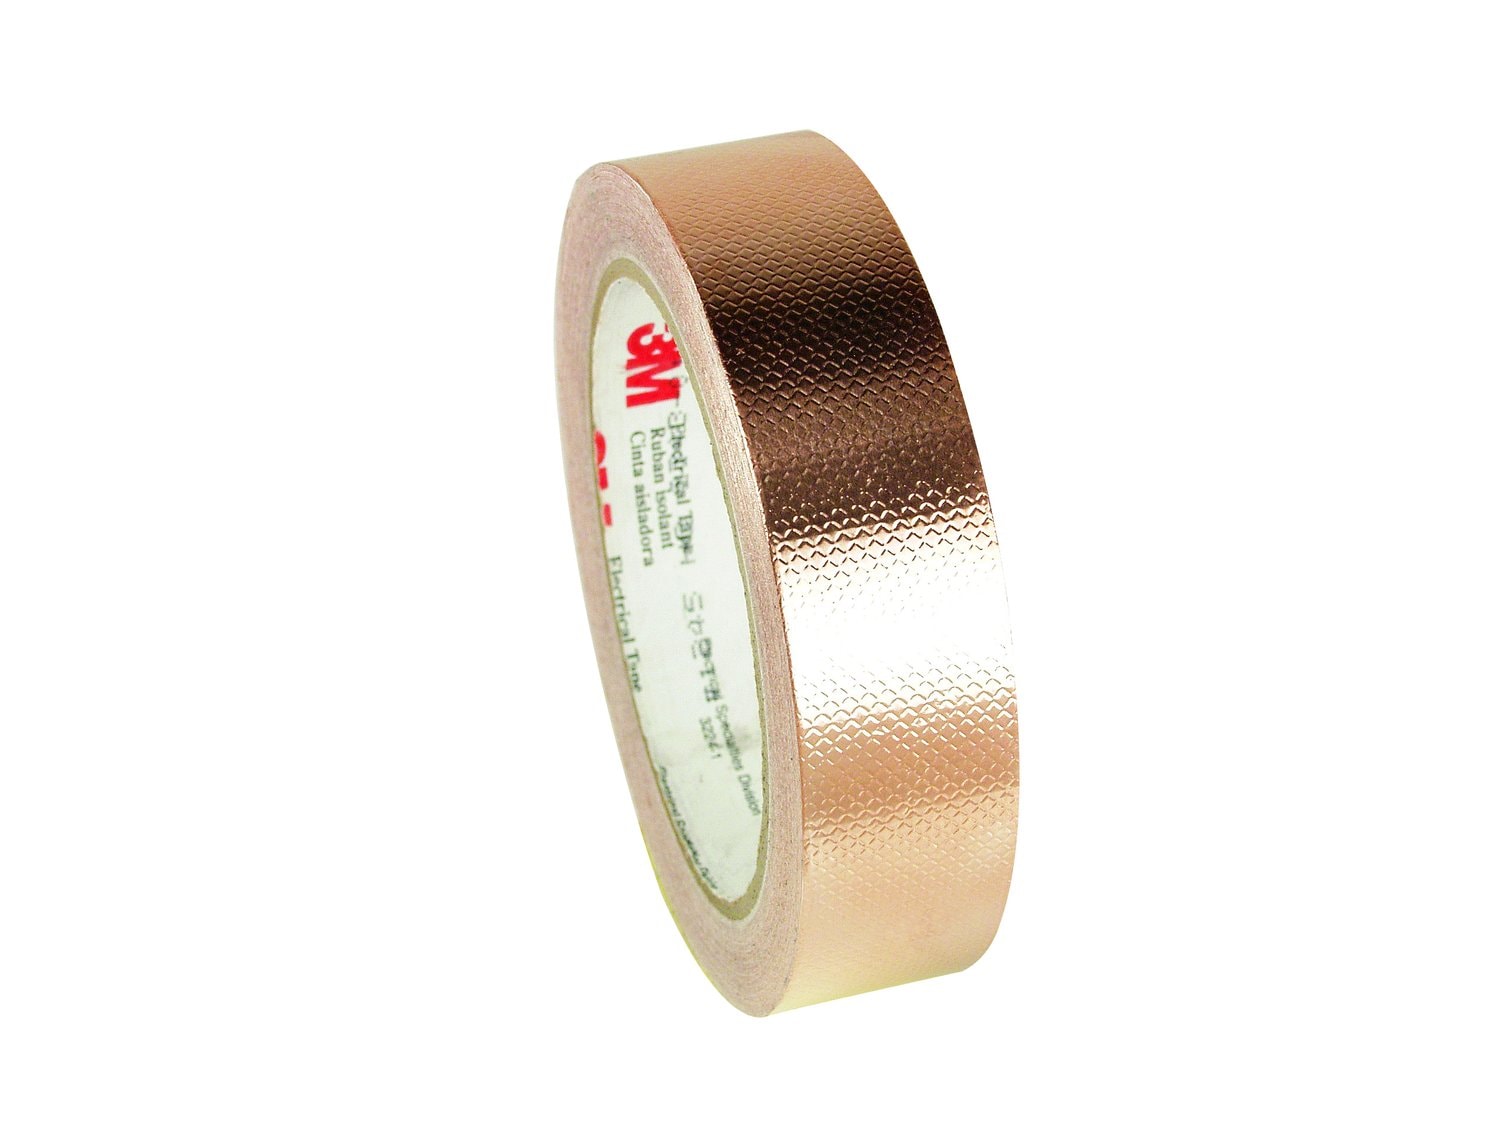 7000132179 - 3M Embossed Copper Foil EMI Shielding Tape 1245, 1 in x 18 yd, 3 in
Paper Core, 9 Rolls/Case